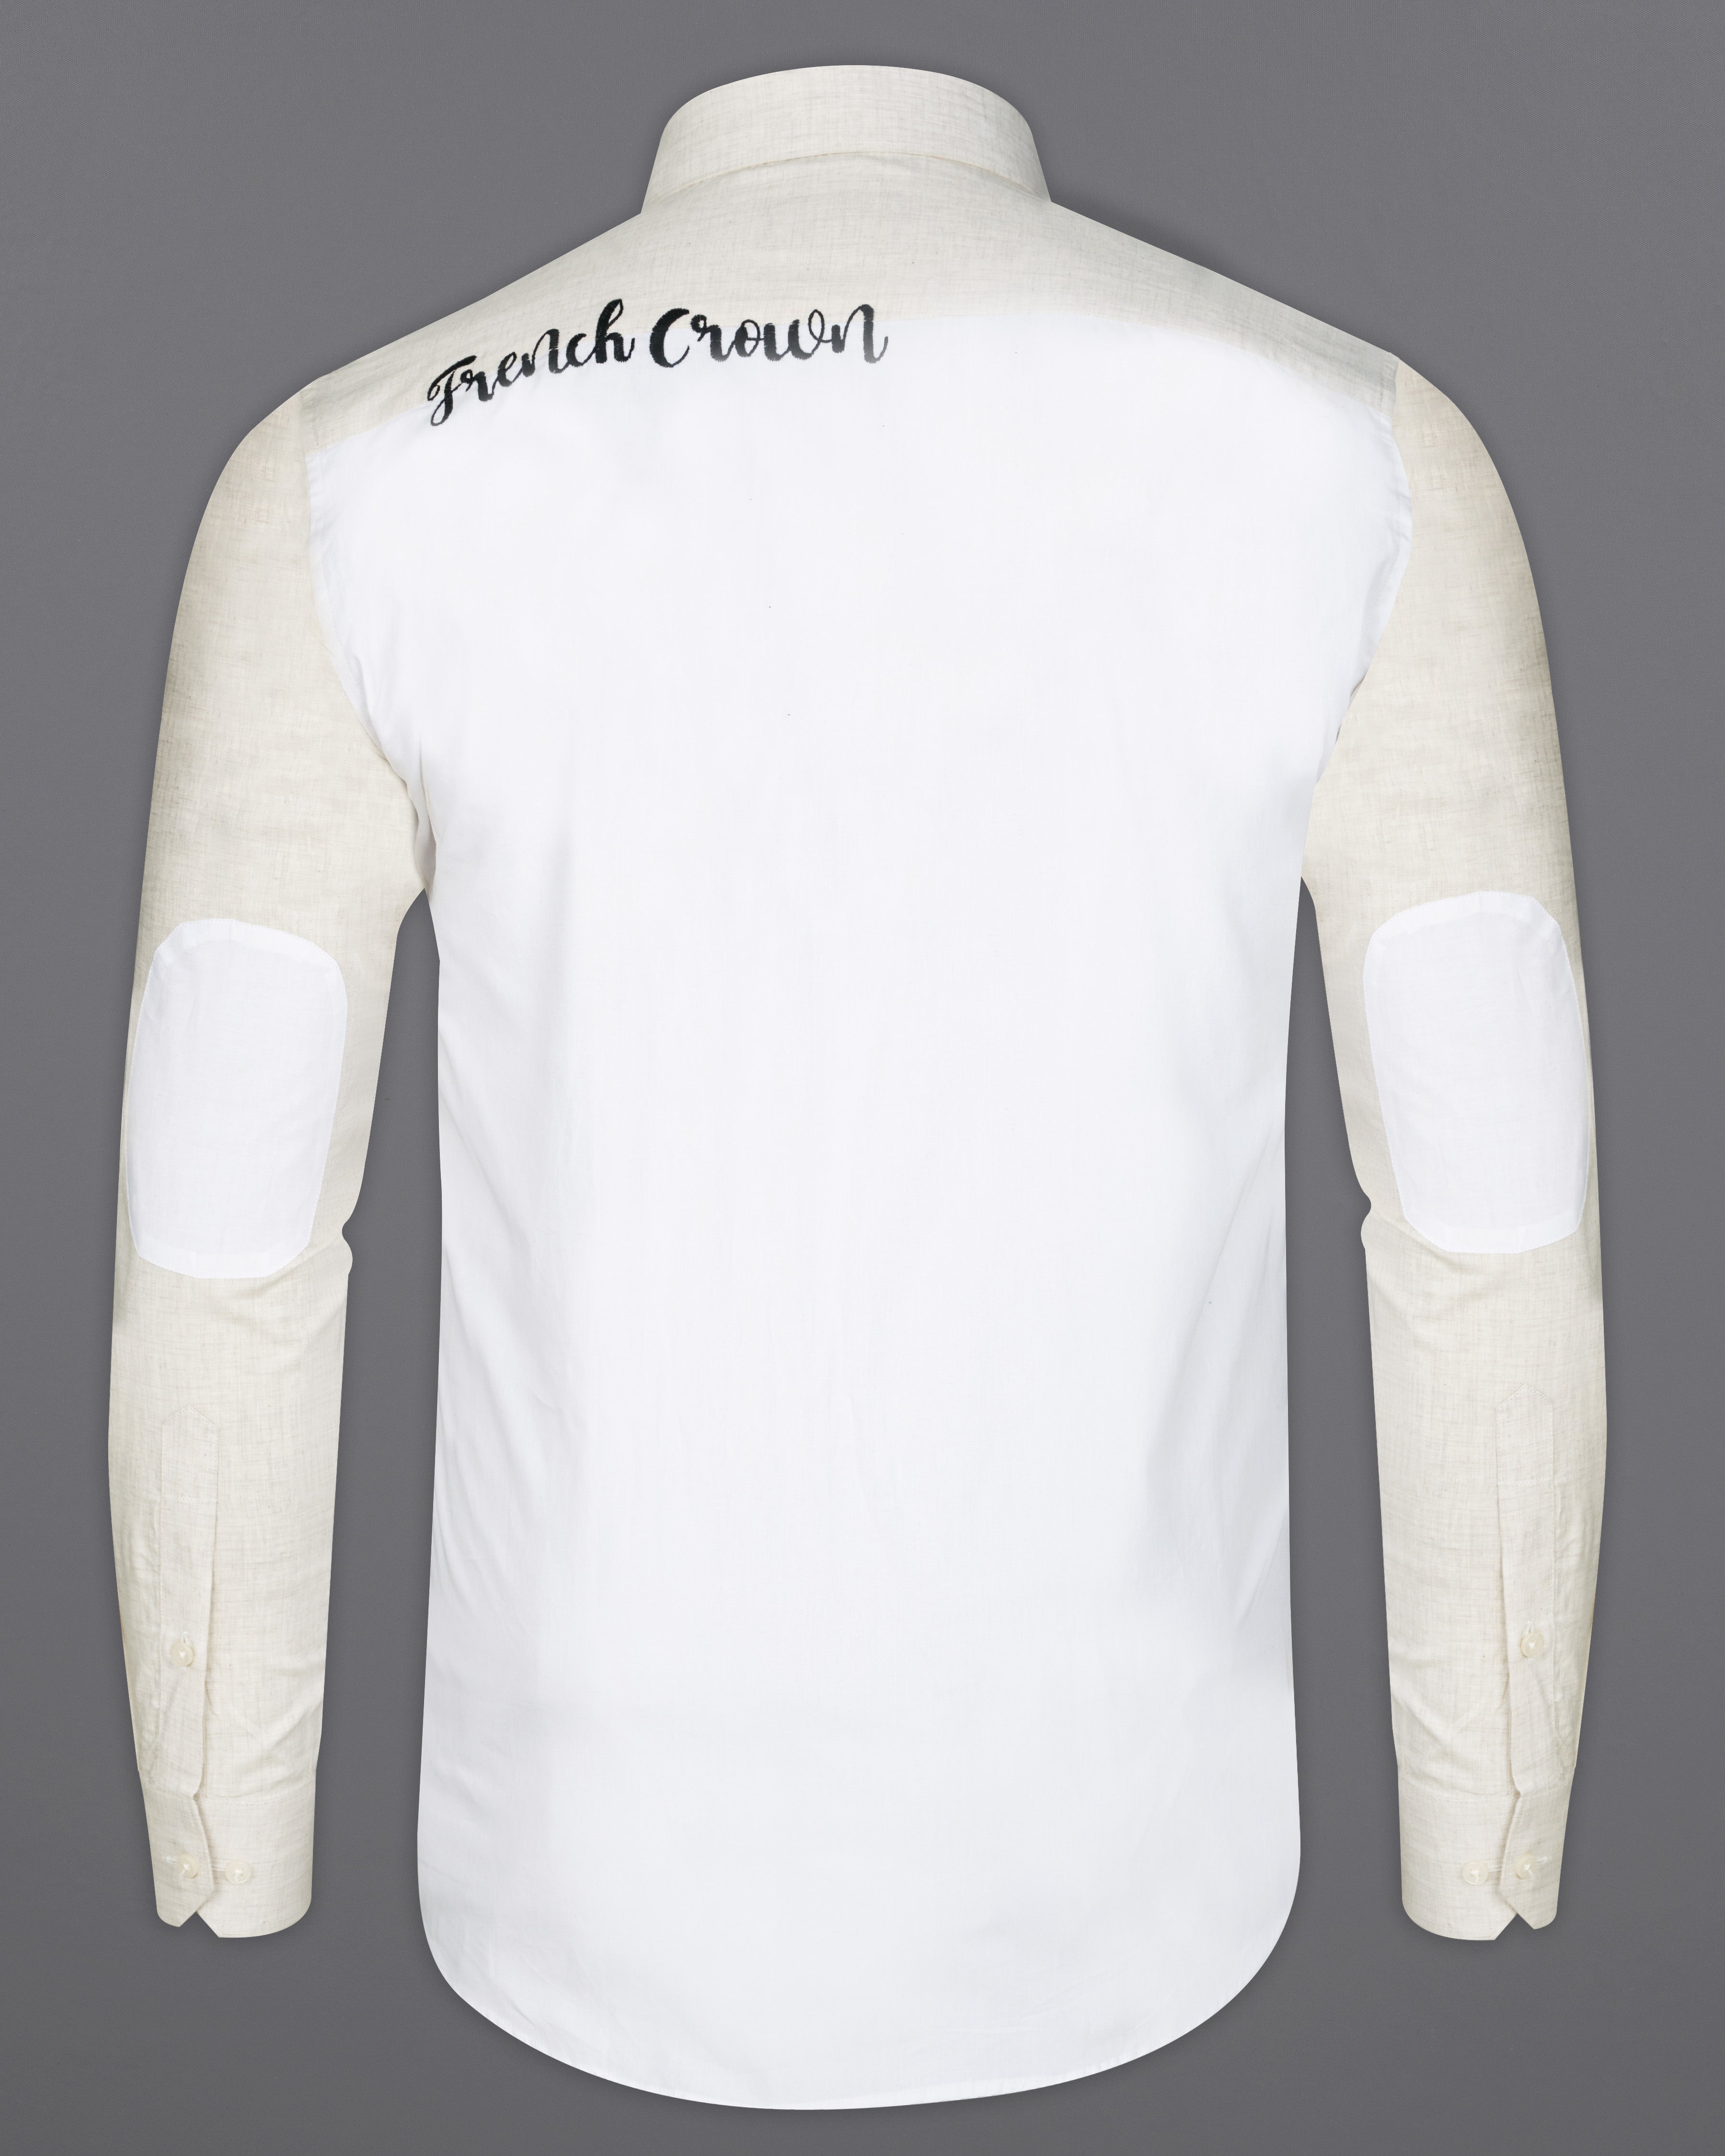 Armour Beige Signature Embroidered with White Patches Premium Cotton Shirt 7566-P310-E067-38, 7566-P310-E067-H-38, 7566-P310-E067-39, 7566-P310-E067-H-39, 7566-P310-E067-40, 7566-P310-E067-H-40, 7566-P310-E067-42, 7566-P310-E067-H-42, 7566-P310-E067-44, 7566-P310-E067-H-44, 7566-P310-E067-46, 7566-P310-E067-H-46, 7566-P310-E067-48, 7566-P310-E067-H-48, 7566-P310-E067-50, 7566-P310-E067-H-50, 7566-P310-E067-52, 7566-P310-E067-H-52